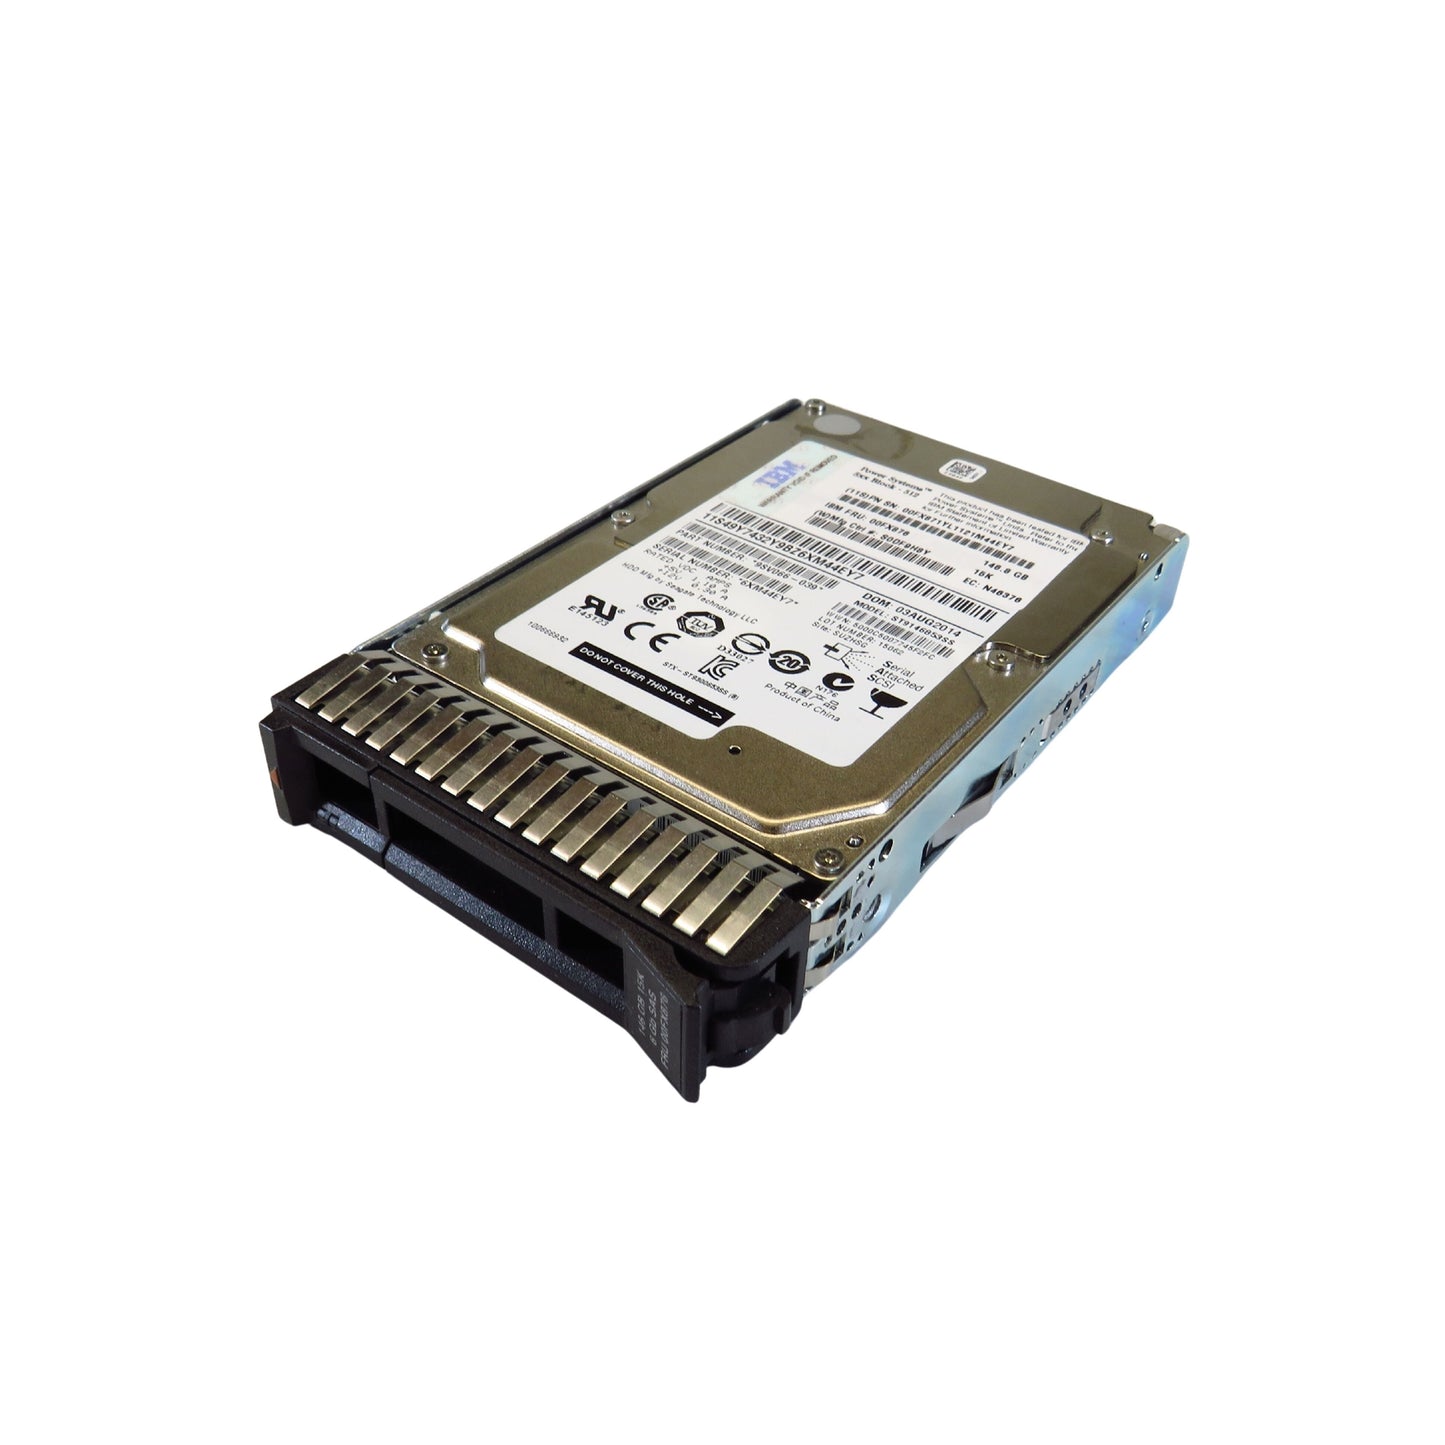 IBM 00FX876 00FX871 146GB 15K RPM 2.5" SAS 6Gbps HDD Hard Drive (Refurbished)